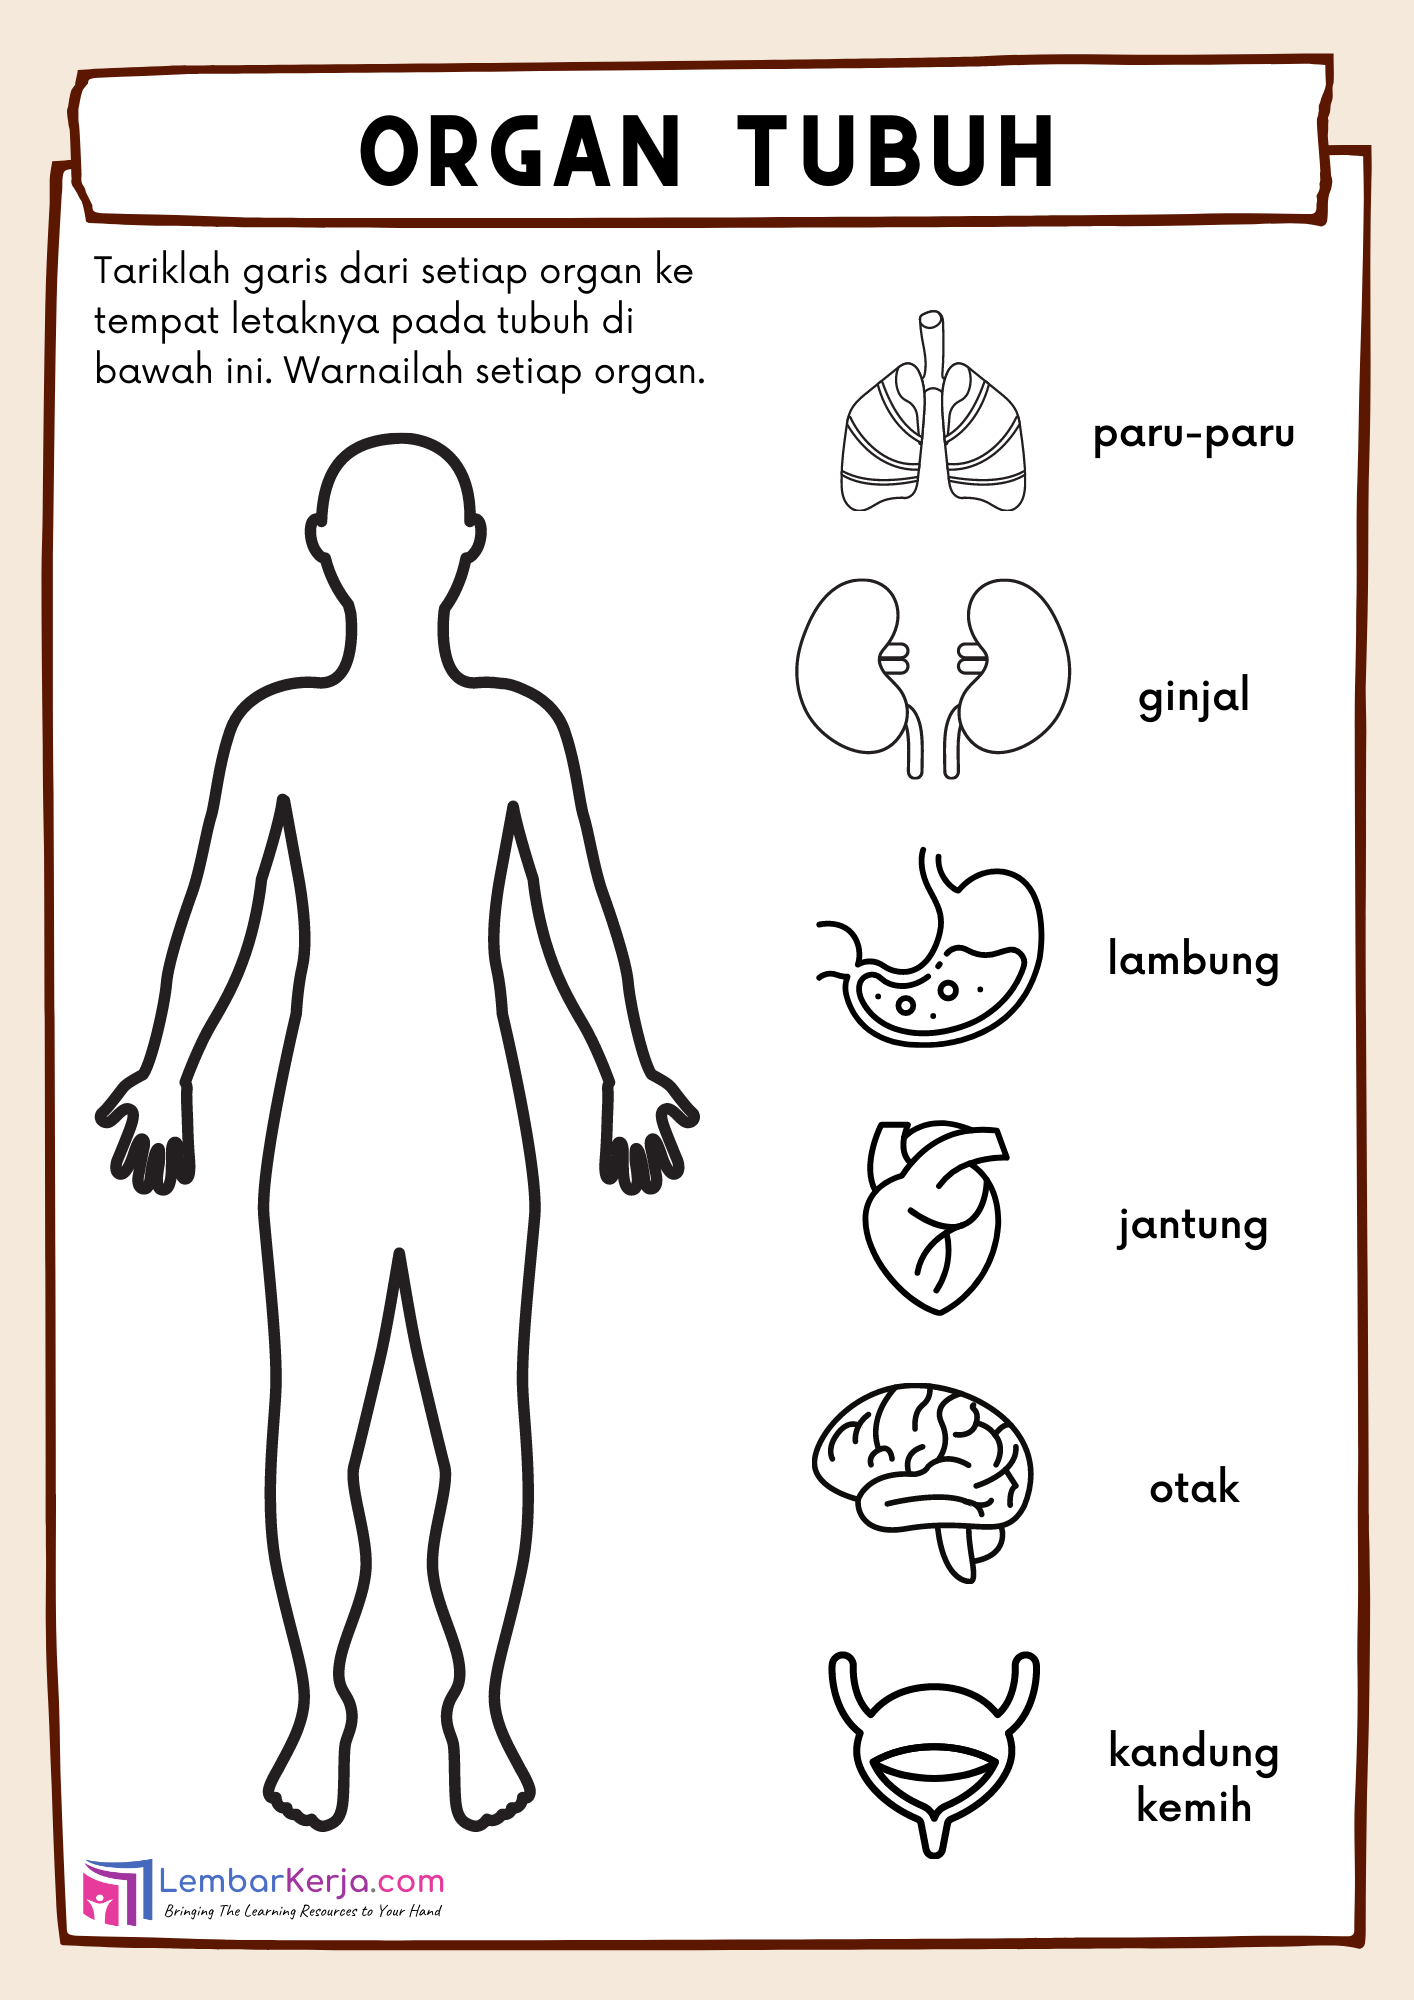 Organ Tubuh Manusia (1) – LembarKerja.Com